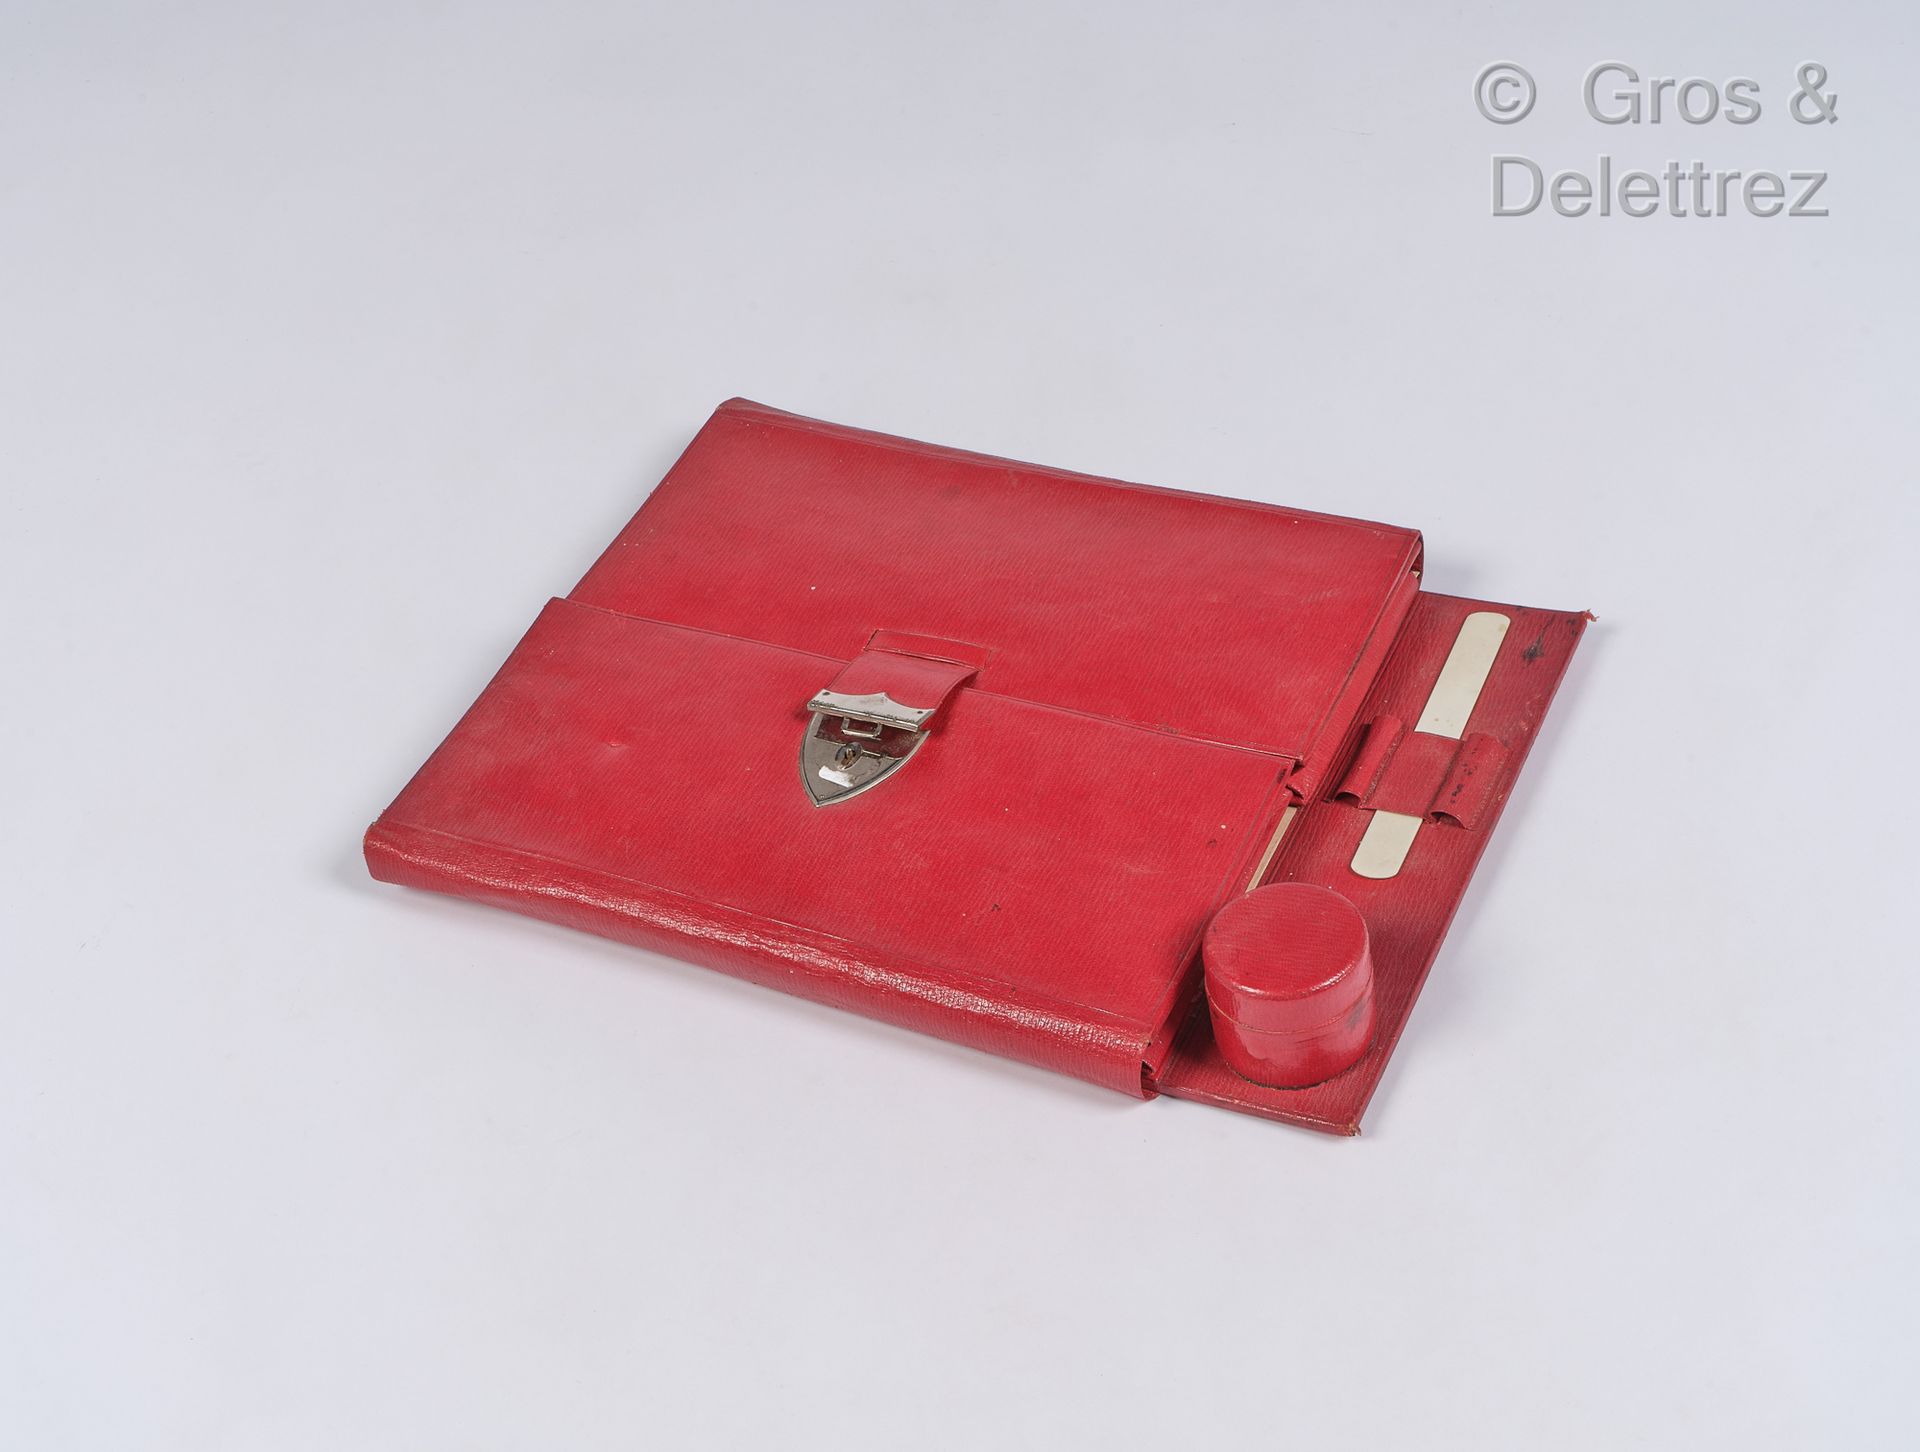 Null 法国作品

红色皮革办公桌套装

30 x 39 厘米